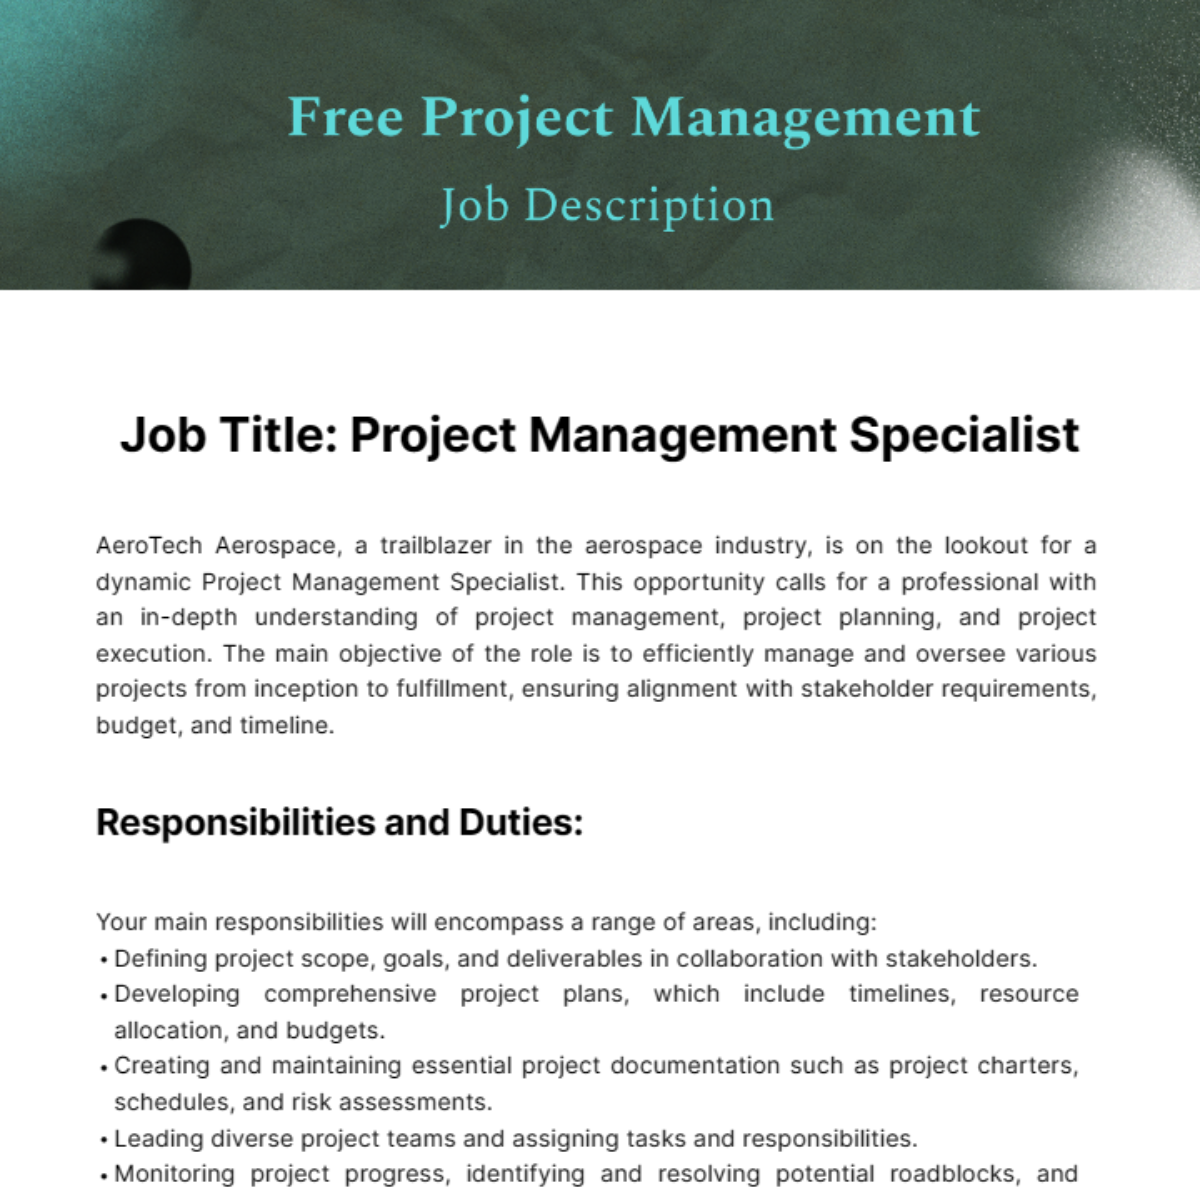 Project Management Job Description Template